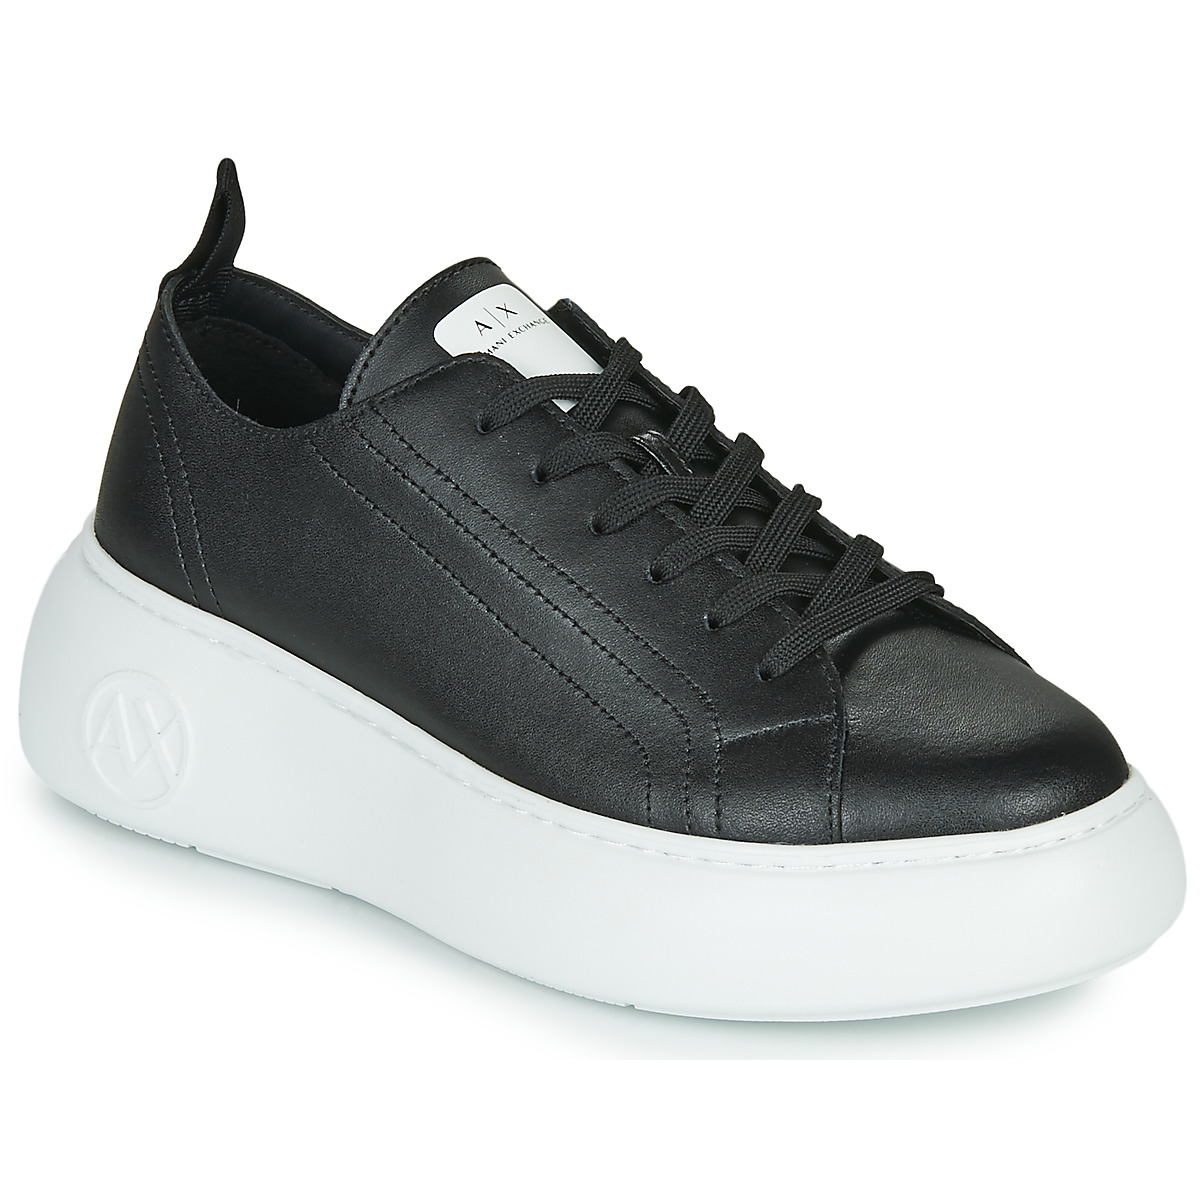 Schuhe Damen Sneaker Low Armani Exchange XCC64-XDX043 Schwarz